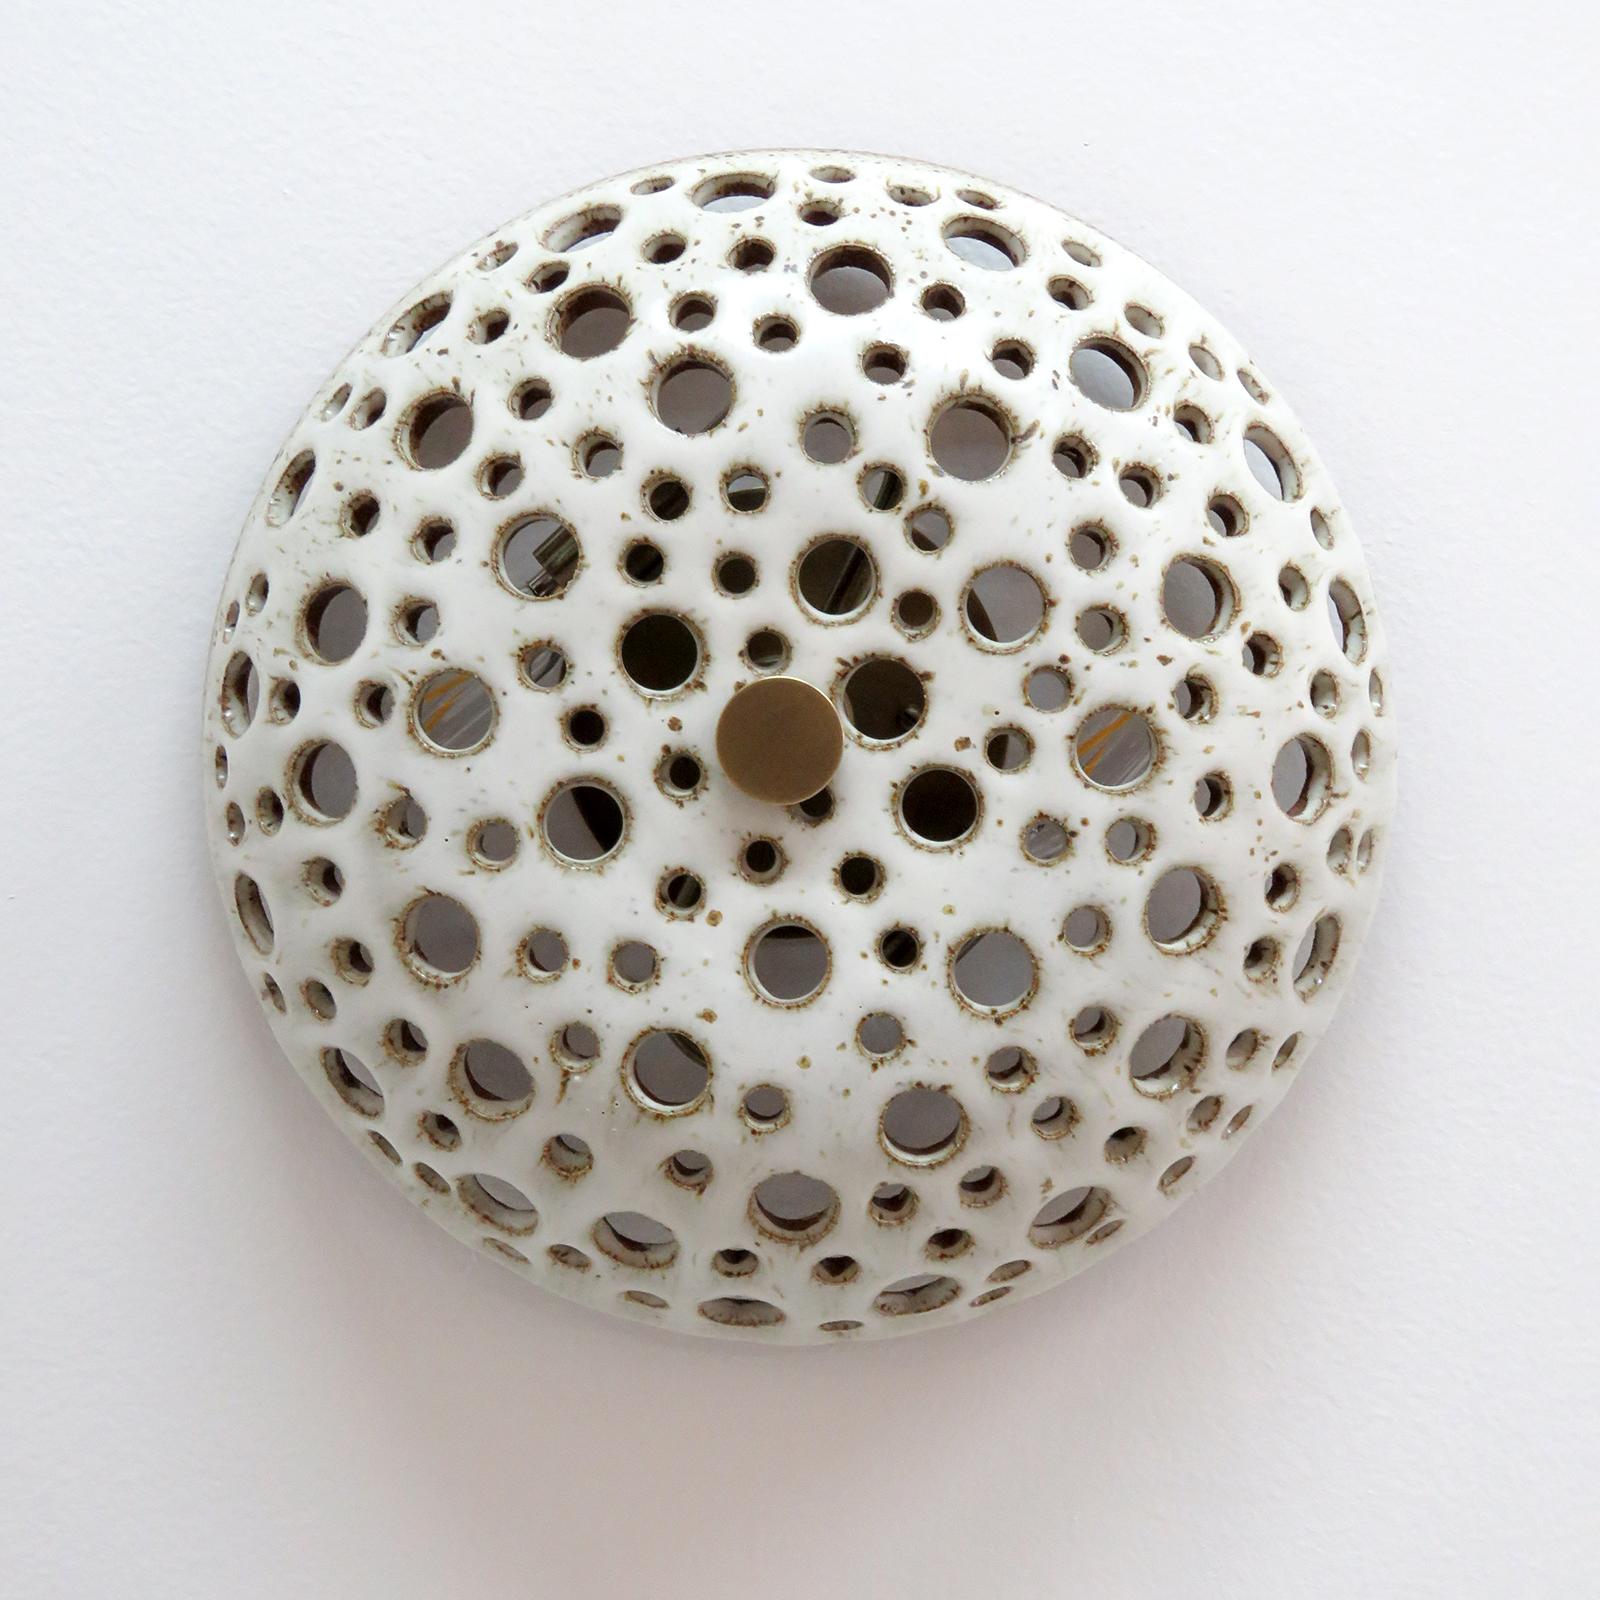 Die atemberaubende Keramikleuchte No.9 wurde von der in Los Angeles lebenden Keramikerin Heather Levine entworfen und handgefertigt. Hochgebranntes Steinzeug mit mattweißer Glasur auf einem korkfarbenen Tonkörper mit dekorativen Perforationen, die